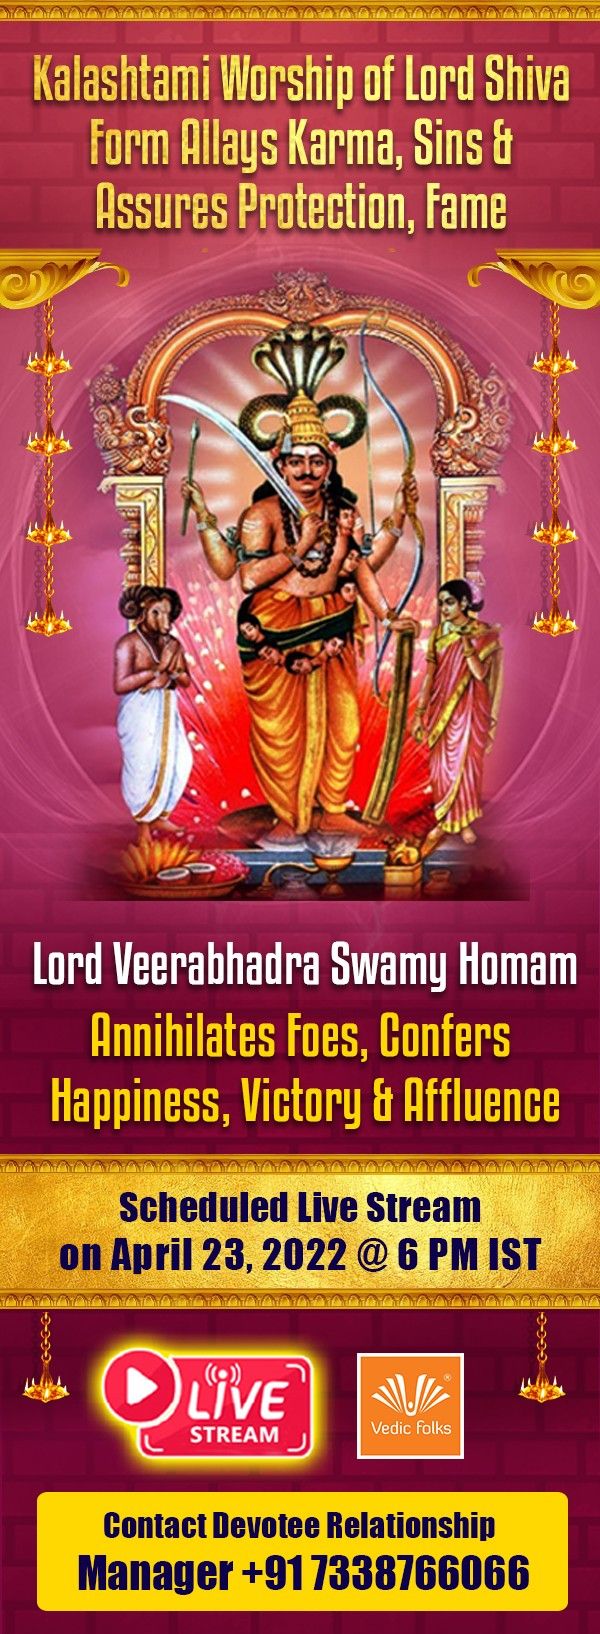 Lord Sri Veerabhadra Swamy Homam